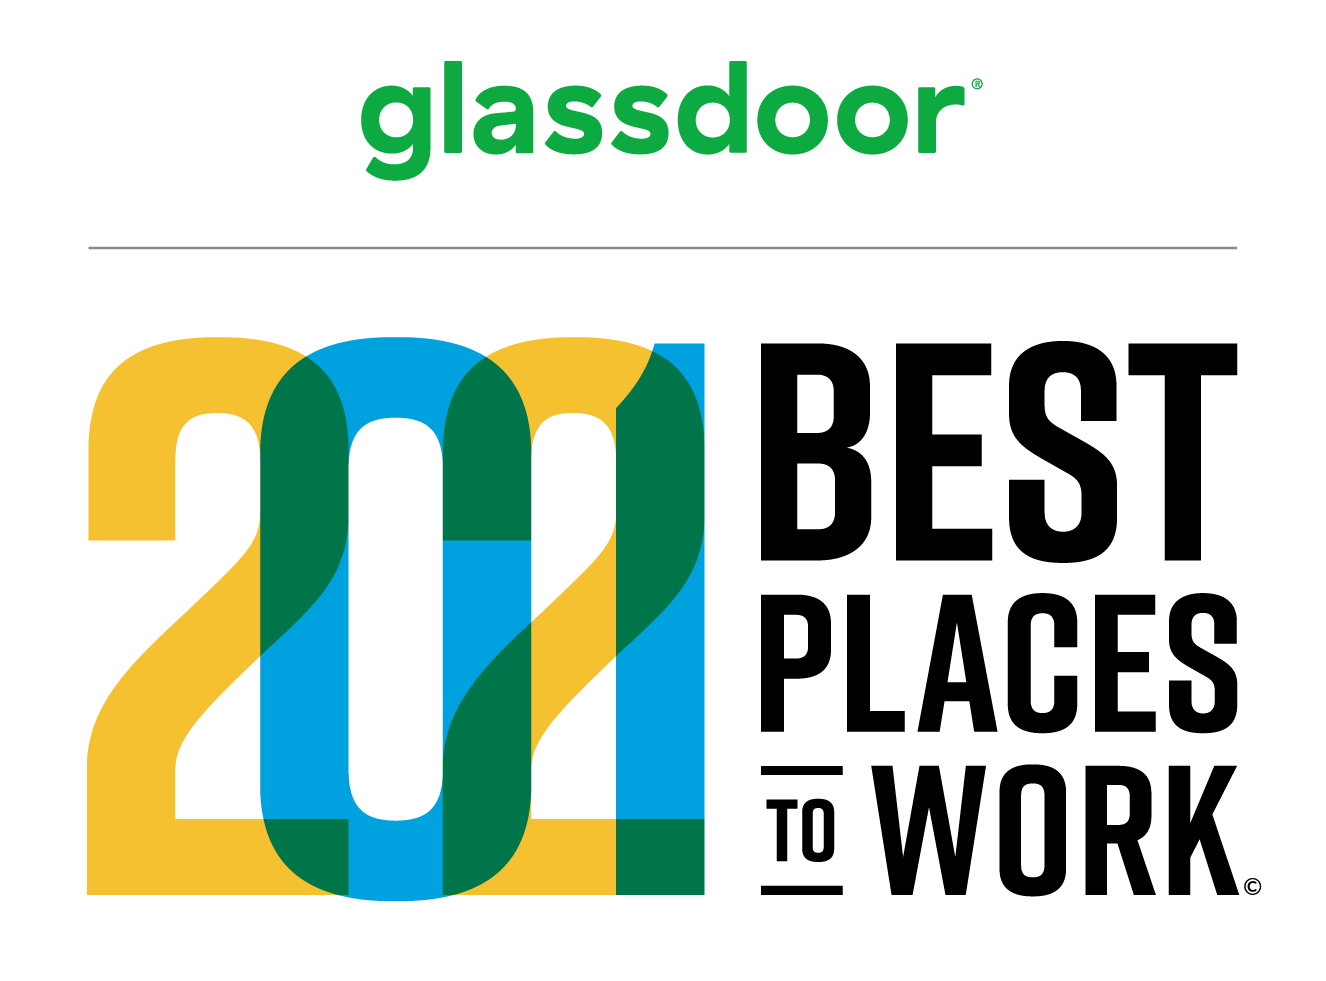 UPDATED - BPTW21+Glassdoor Stacked Logo